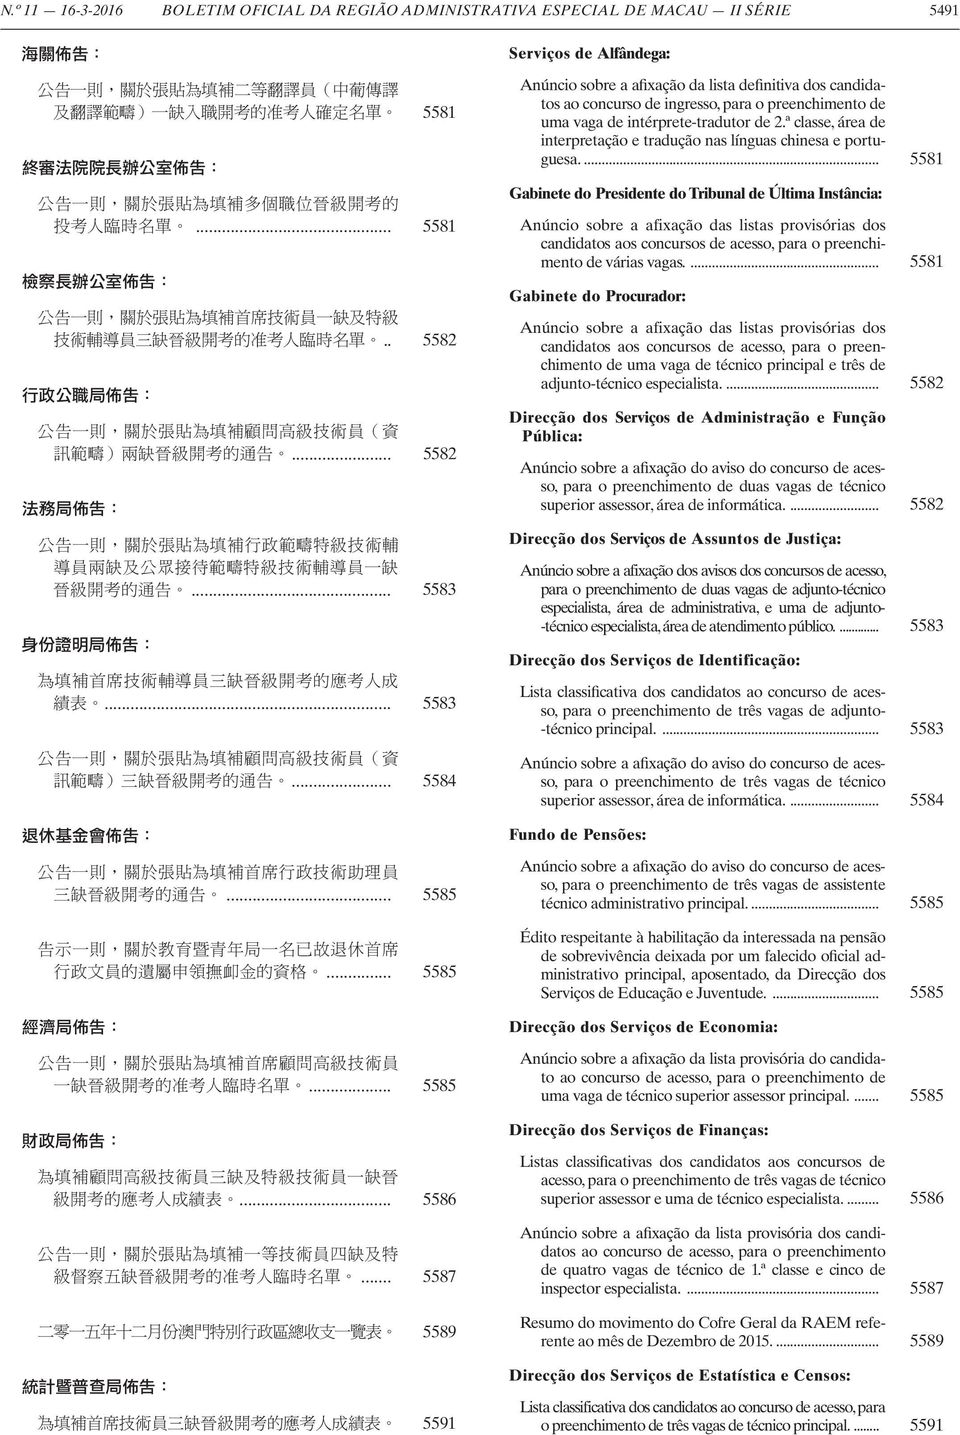 ª classe, área de interpretação e tradução nas línguas chinesa e portuguesa.